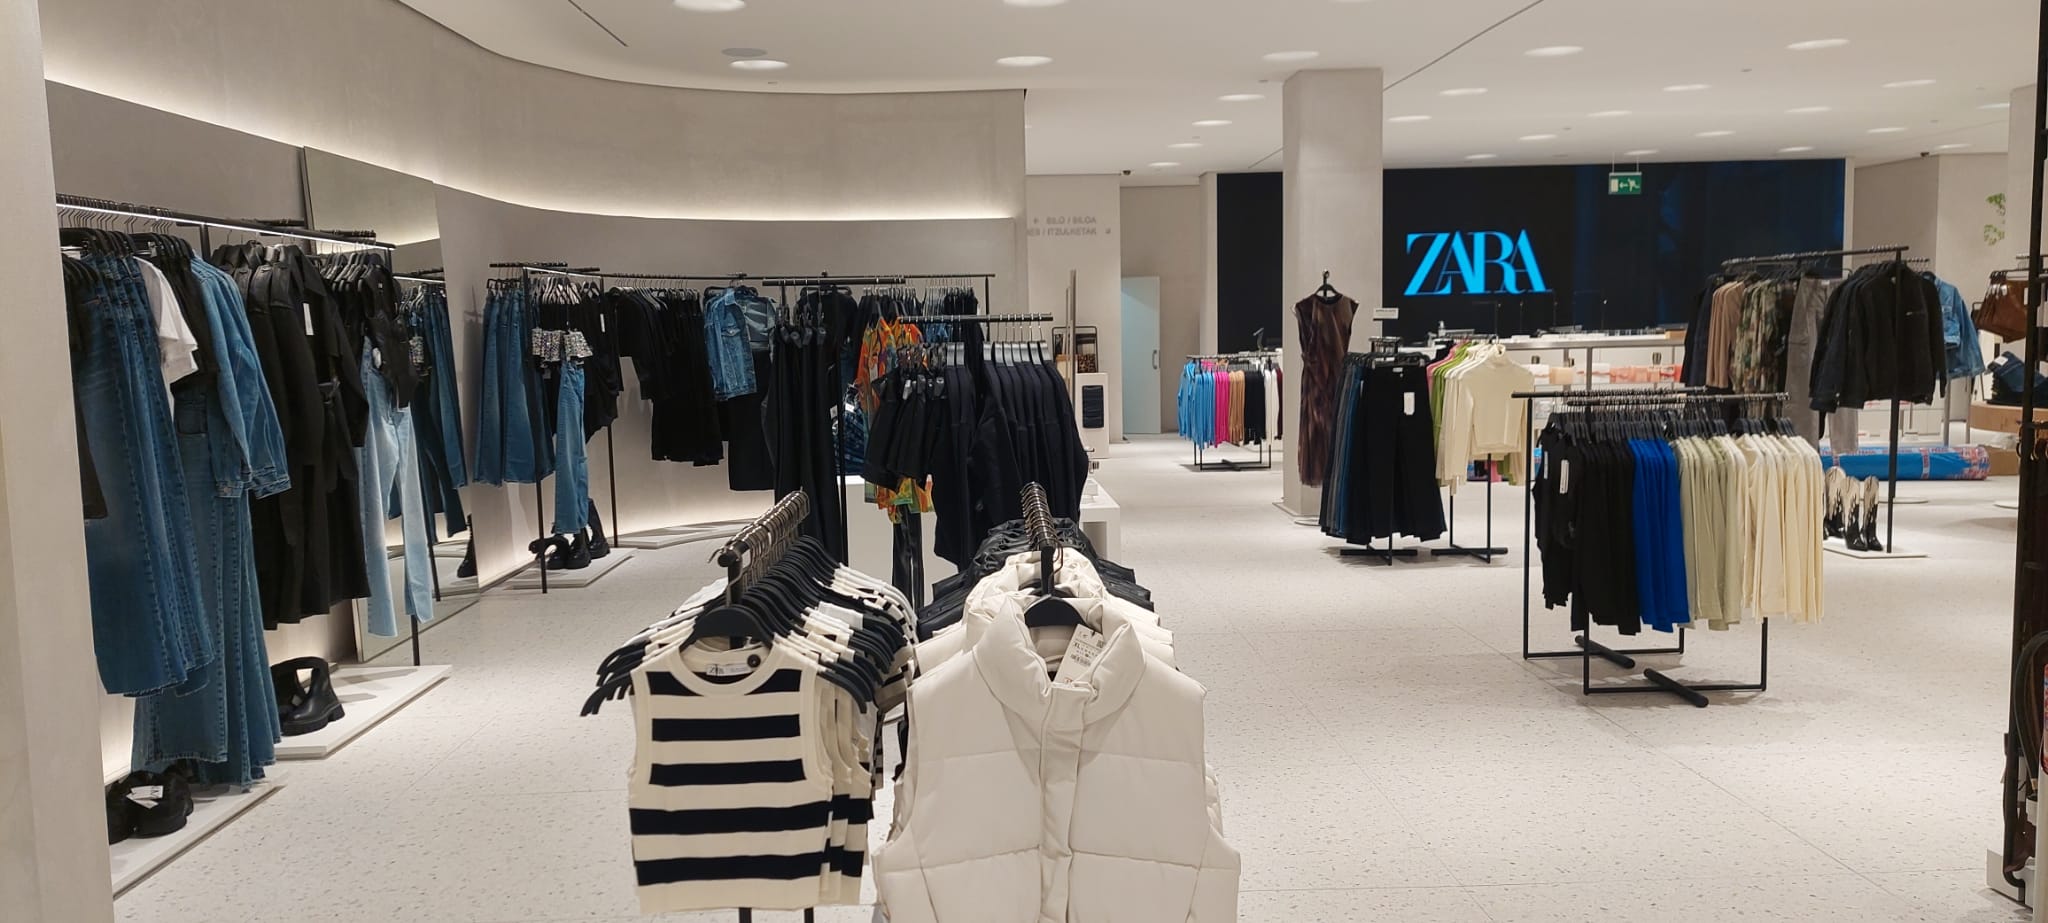 La tienda ZARA del centro comercial Artea vuelve a abrir al